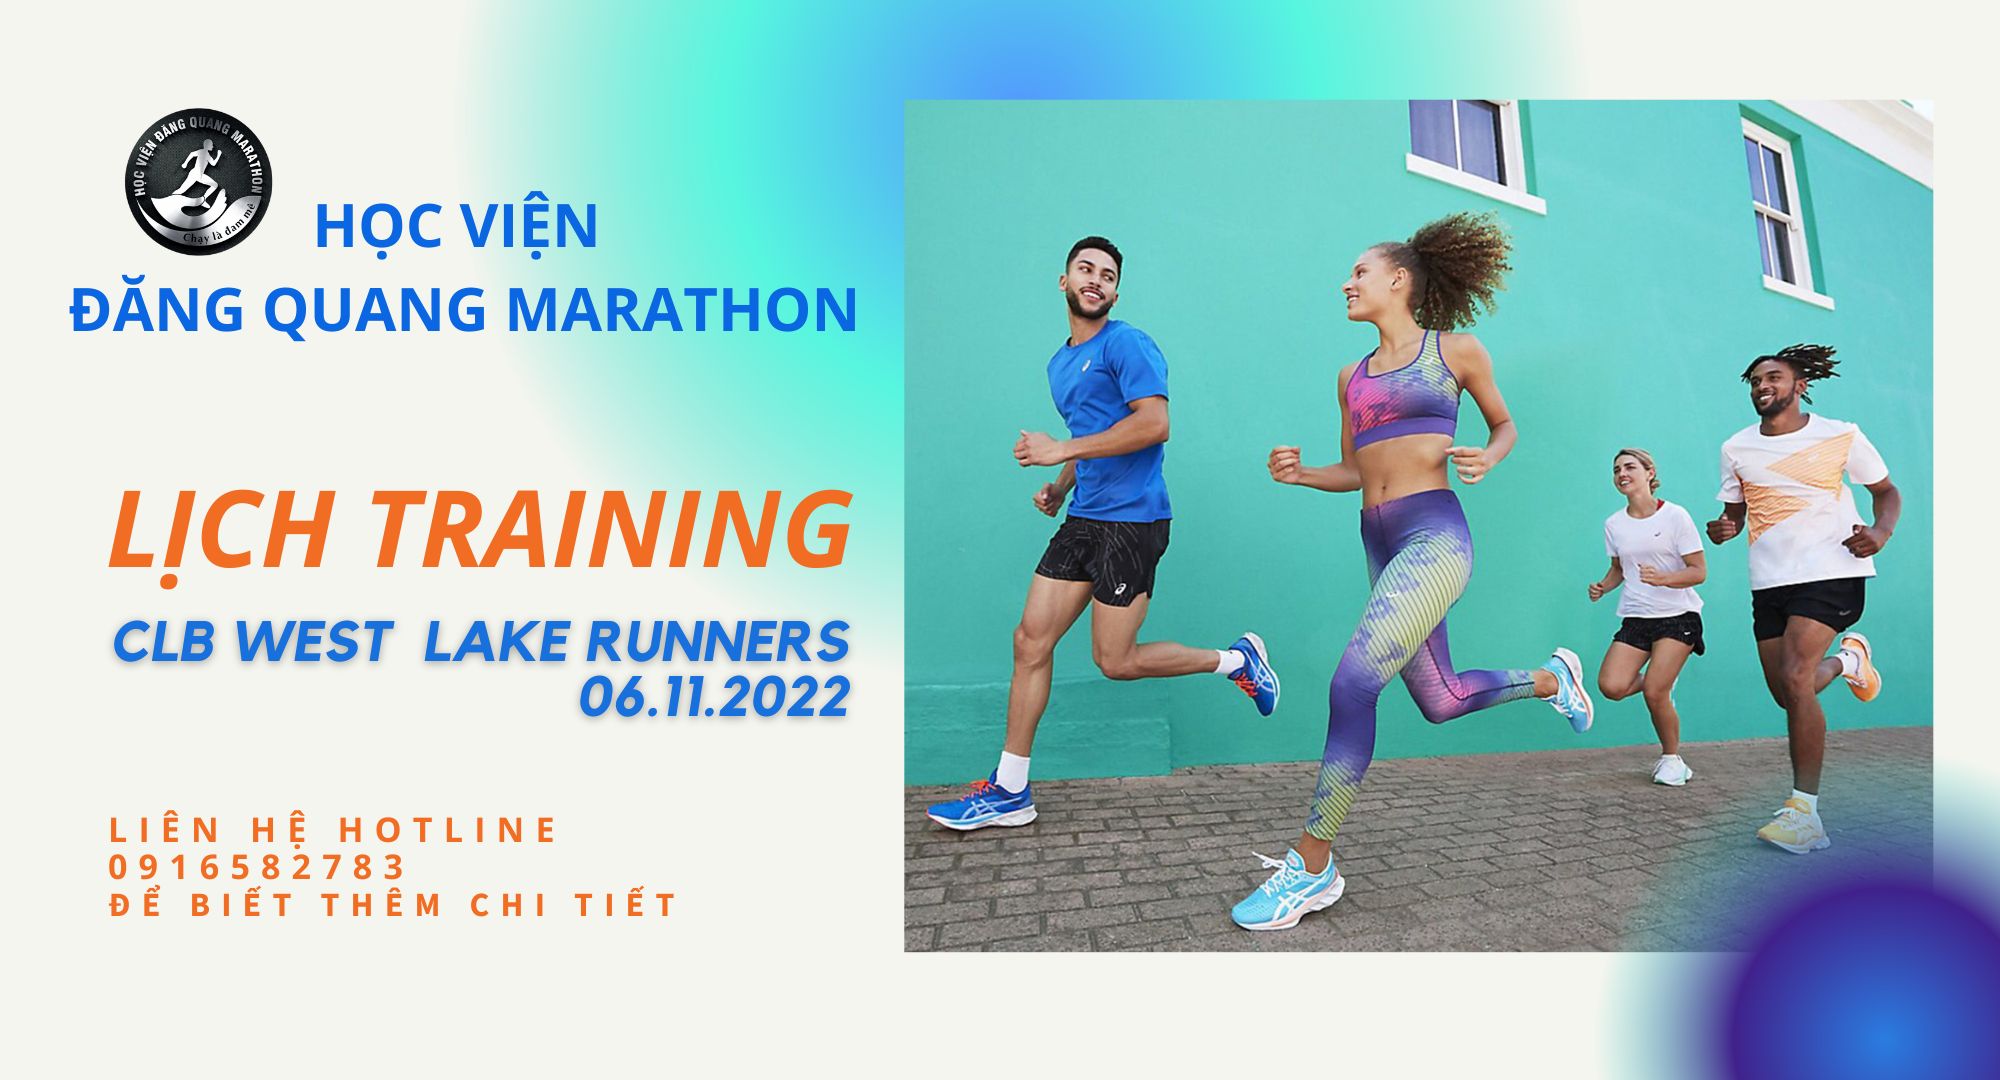 Lịch training 6.11.2022 tại Hà Nội - Chỉnh dáng chạy bộ cho CLB West Lake Runners (WLR)